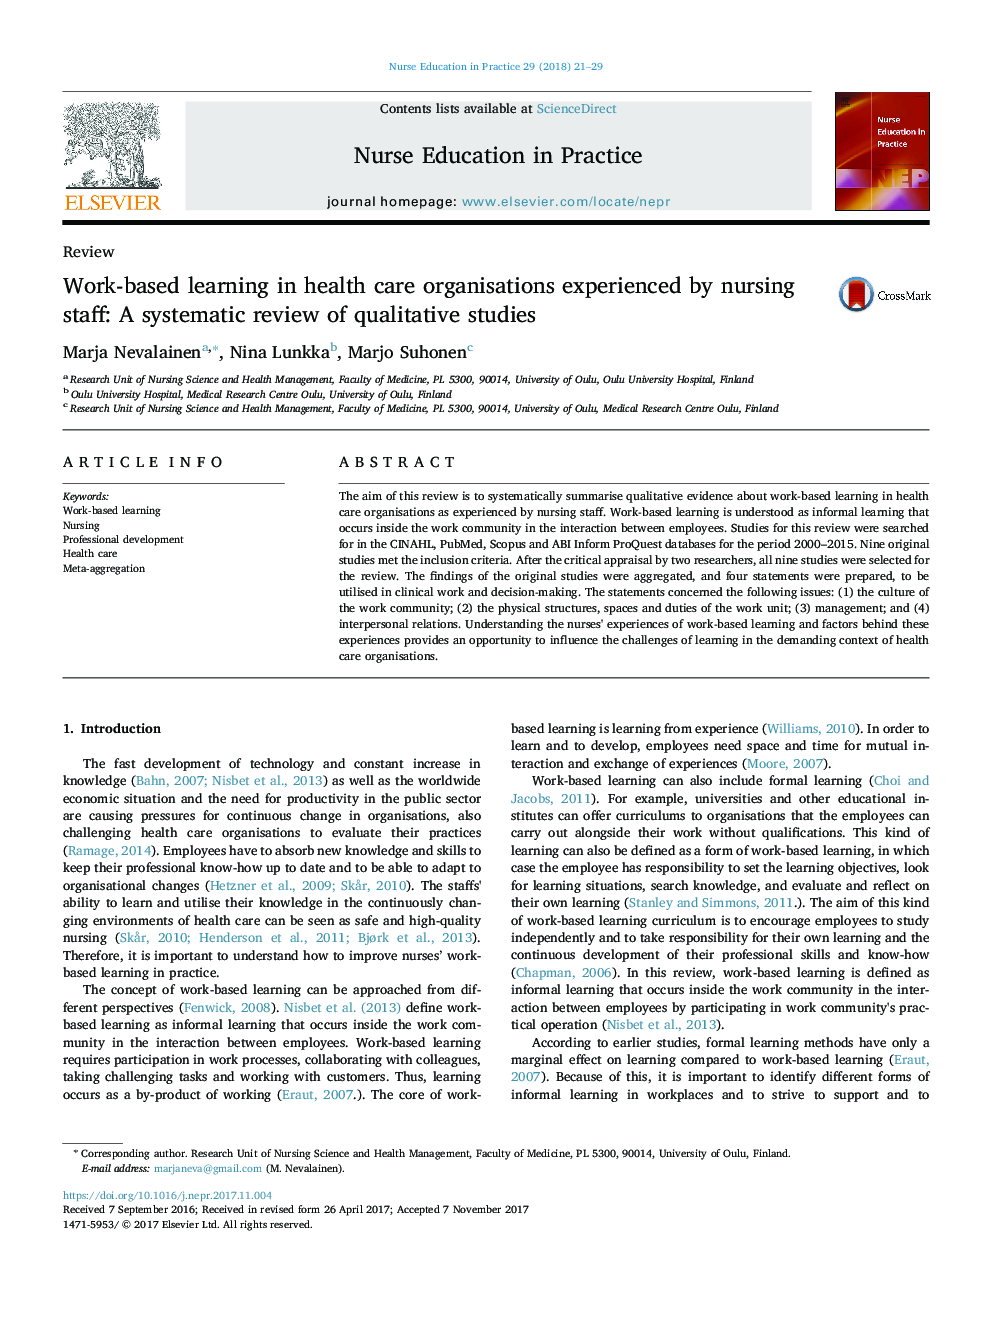 یادگیری مبتنی بر کار در سازمان های مراقبت های بهداشتی با تجربه کارکنان پرستاری: بررسی سیستماتیک مطالعات کیفی 